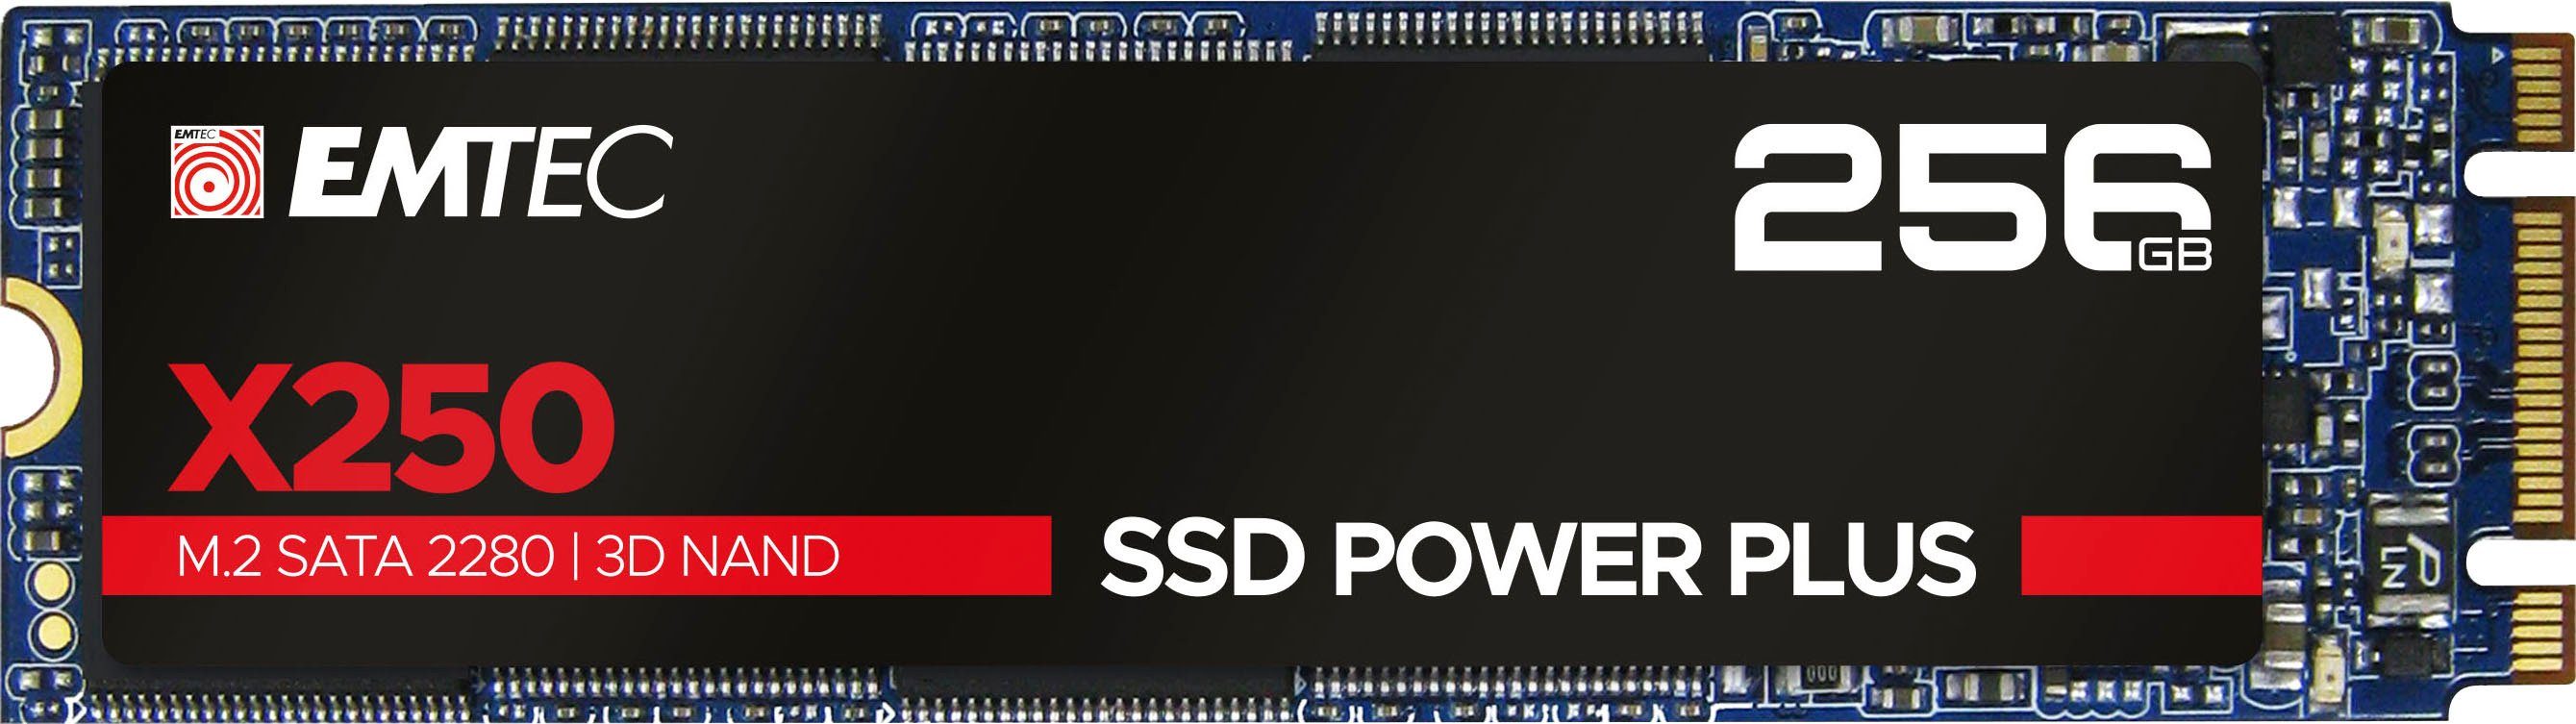 EMTEC X250 Power Plus SSD interne SSD (256 GB) 520 MB/S Lesegeschwindigkeit, 500 MB/S Schreibgeschwindigkeit